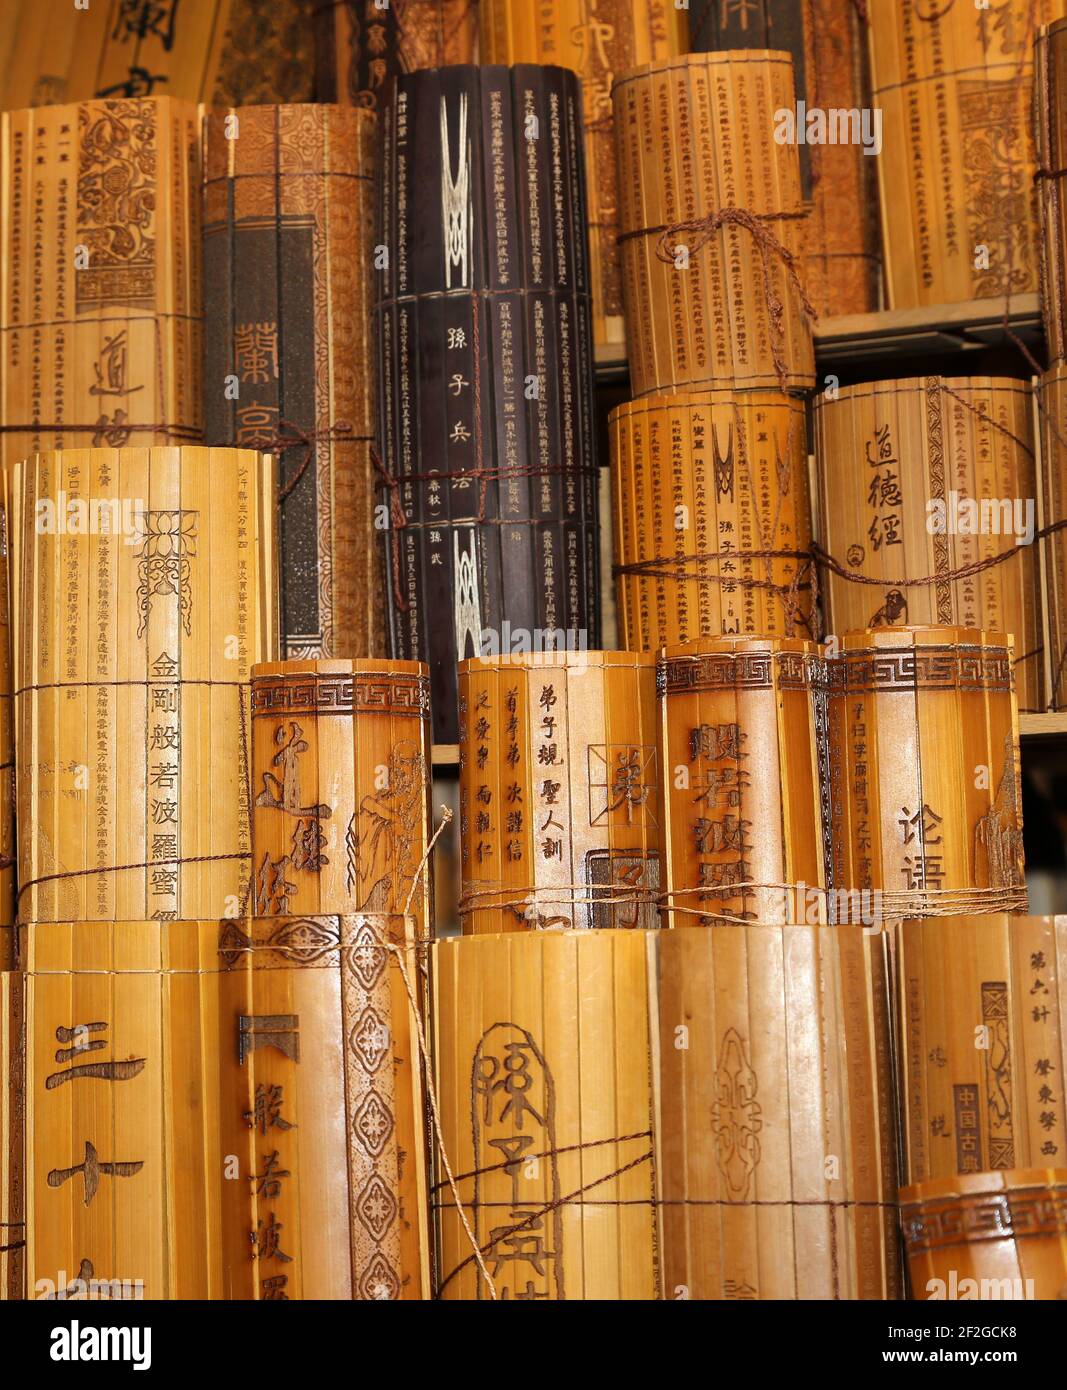 Chinesische traditionelle Bambus rutscht. Dies ist eines der wichtigsten Medien für Alphabetisierung in frühen China.Chinesische Schriftzeichen wurden auf langen, schmalen Streifen eingeschrieben Stockfoto